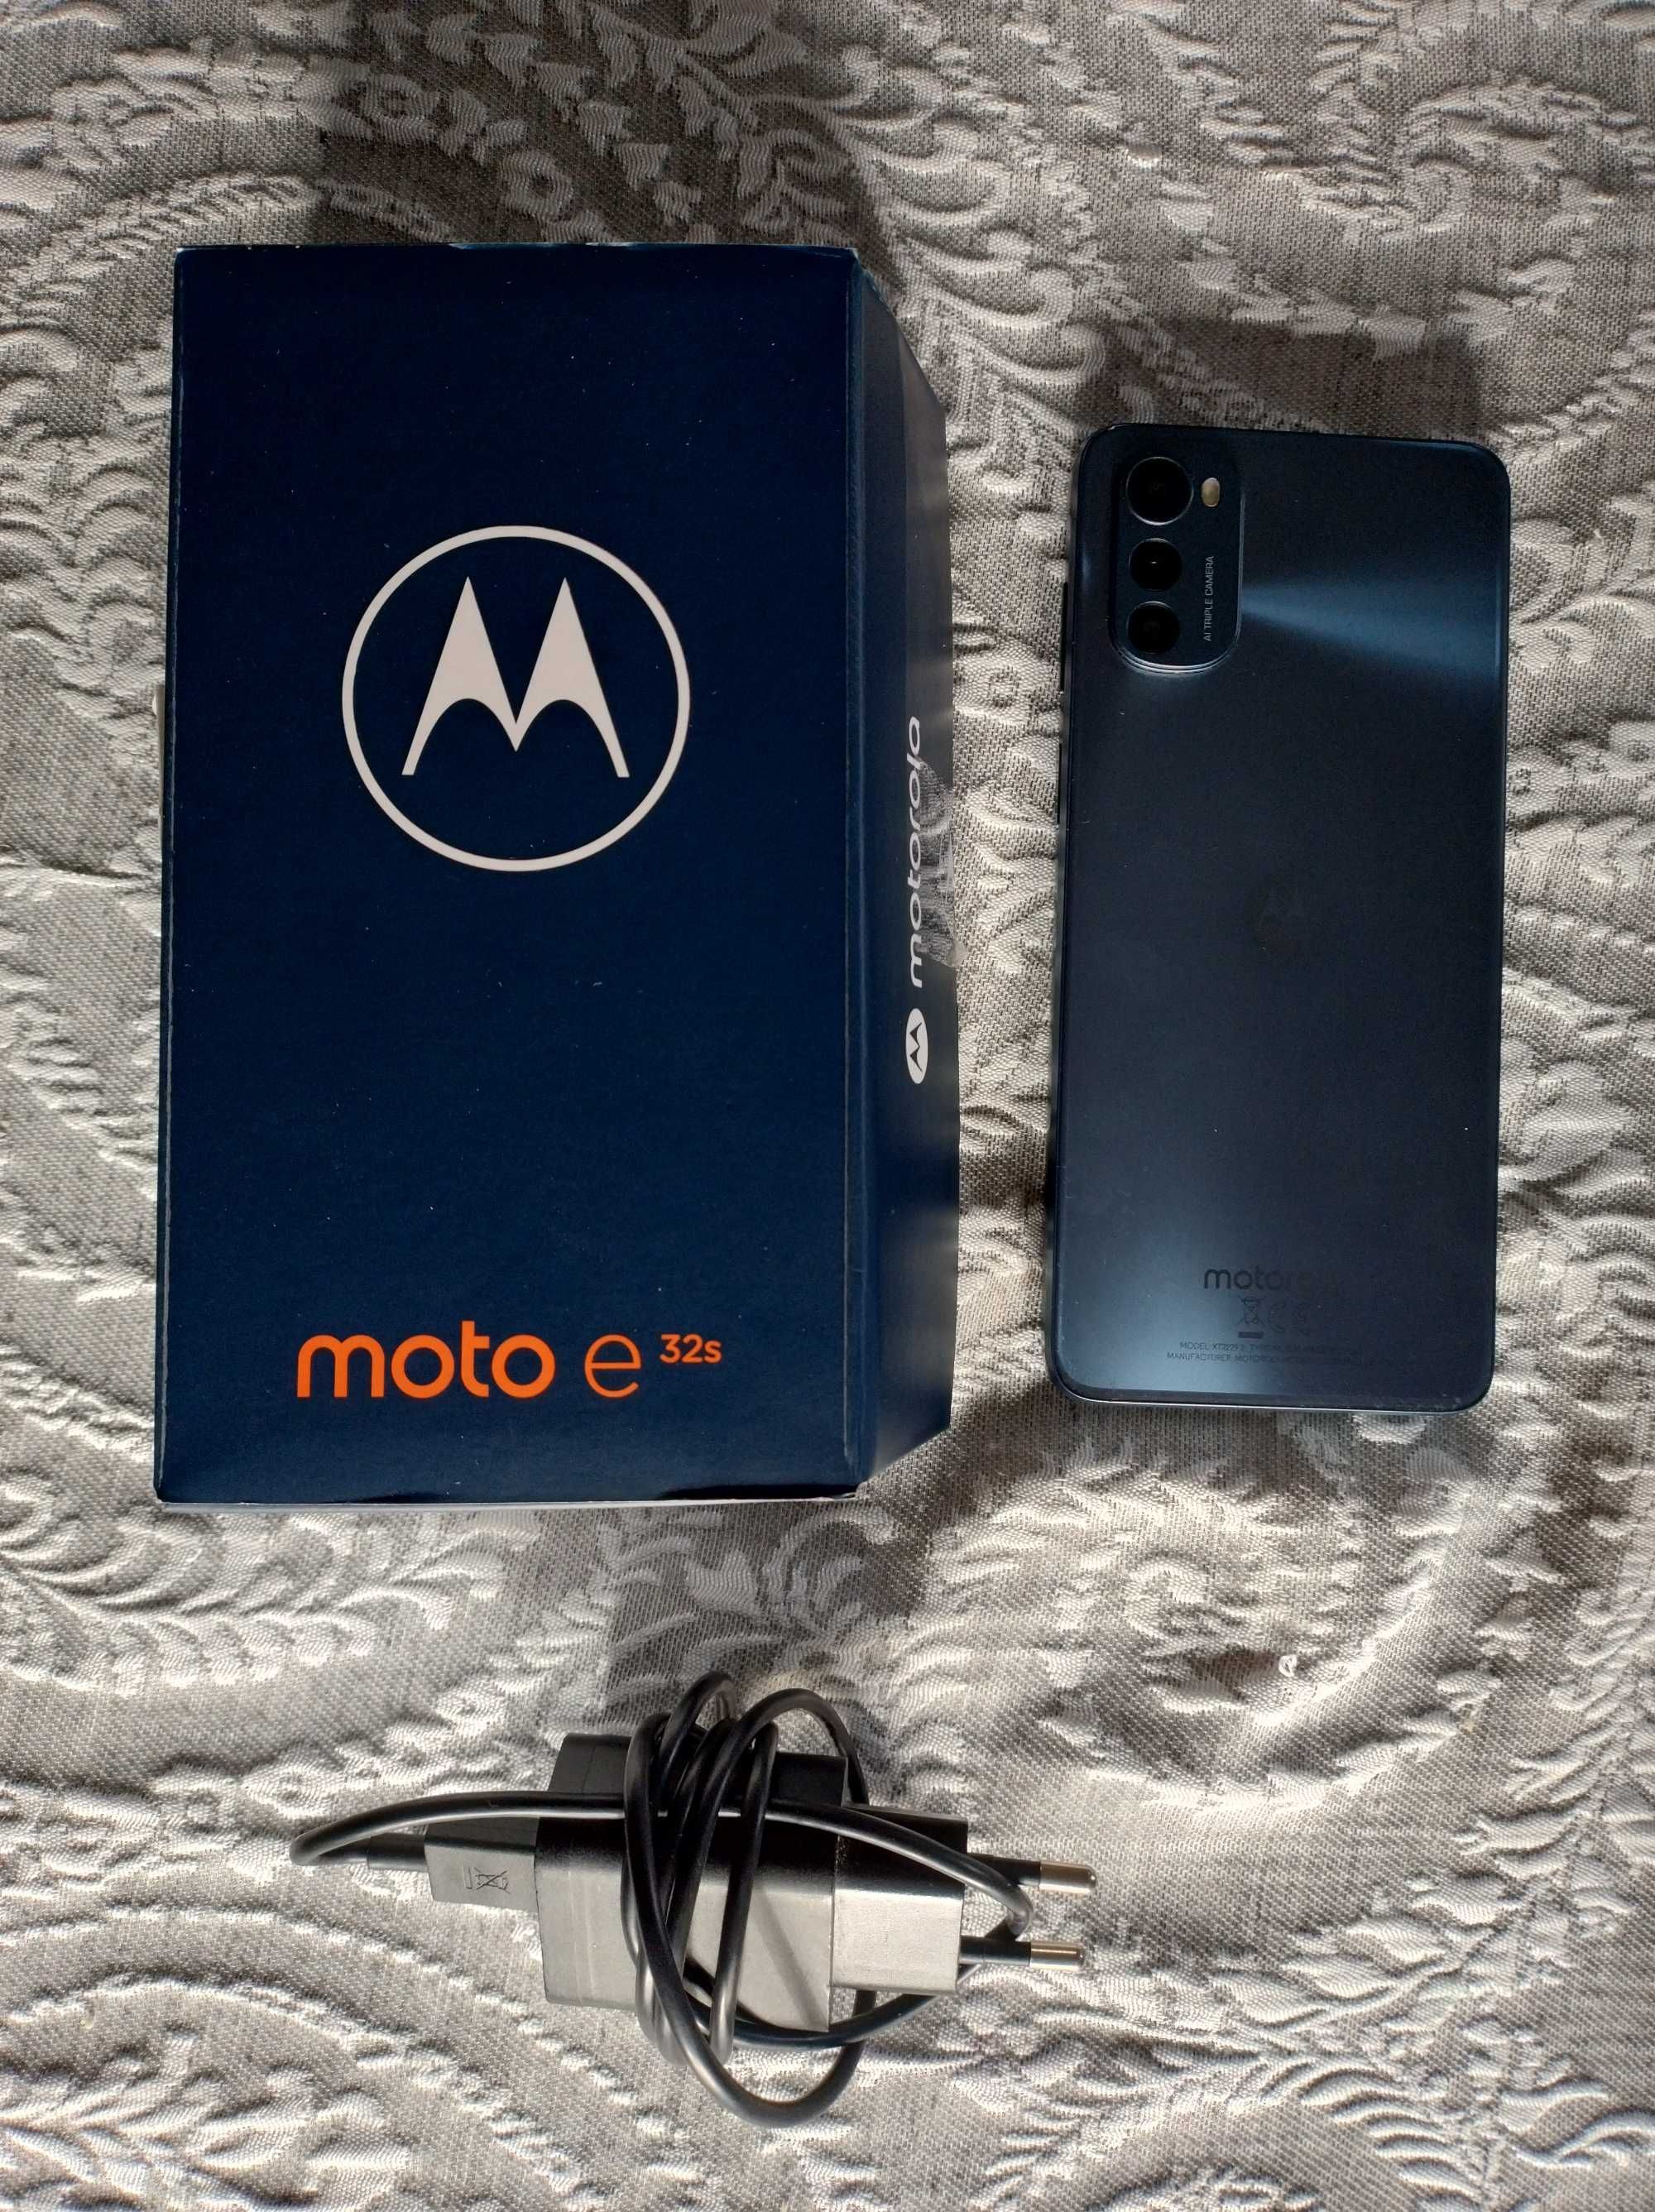 Motorola Moto E 32 s